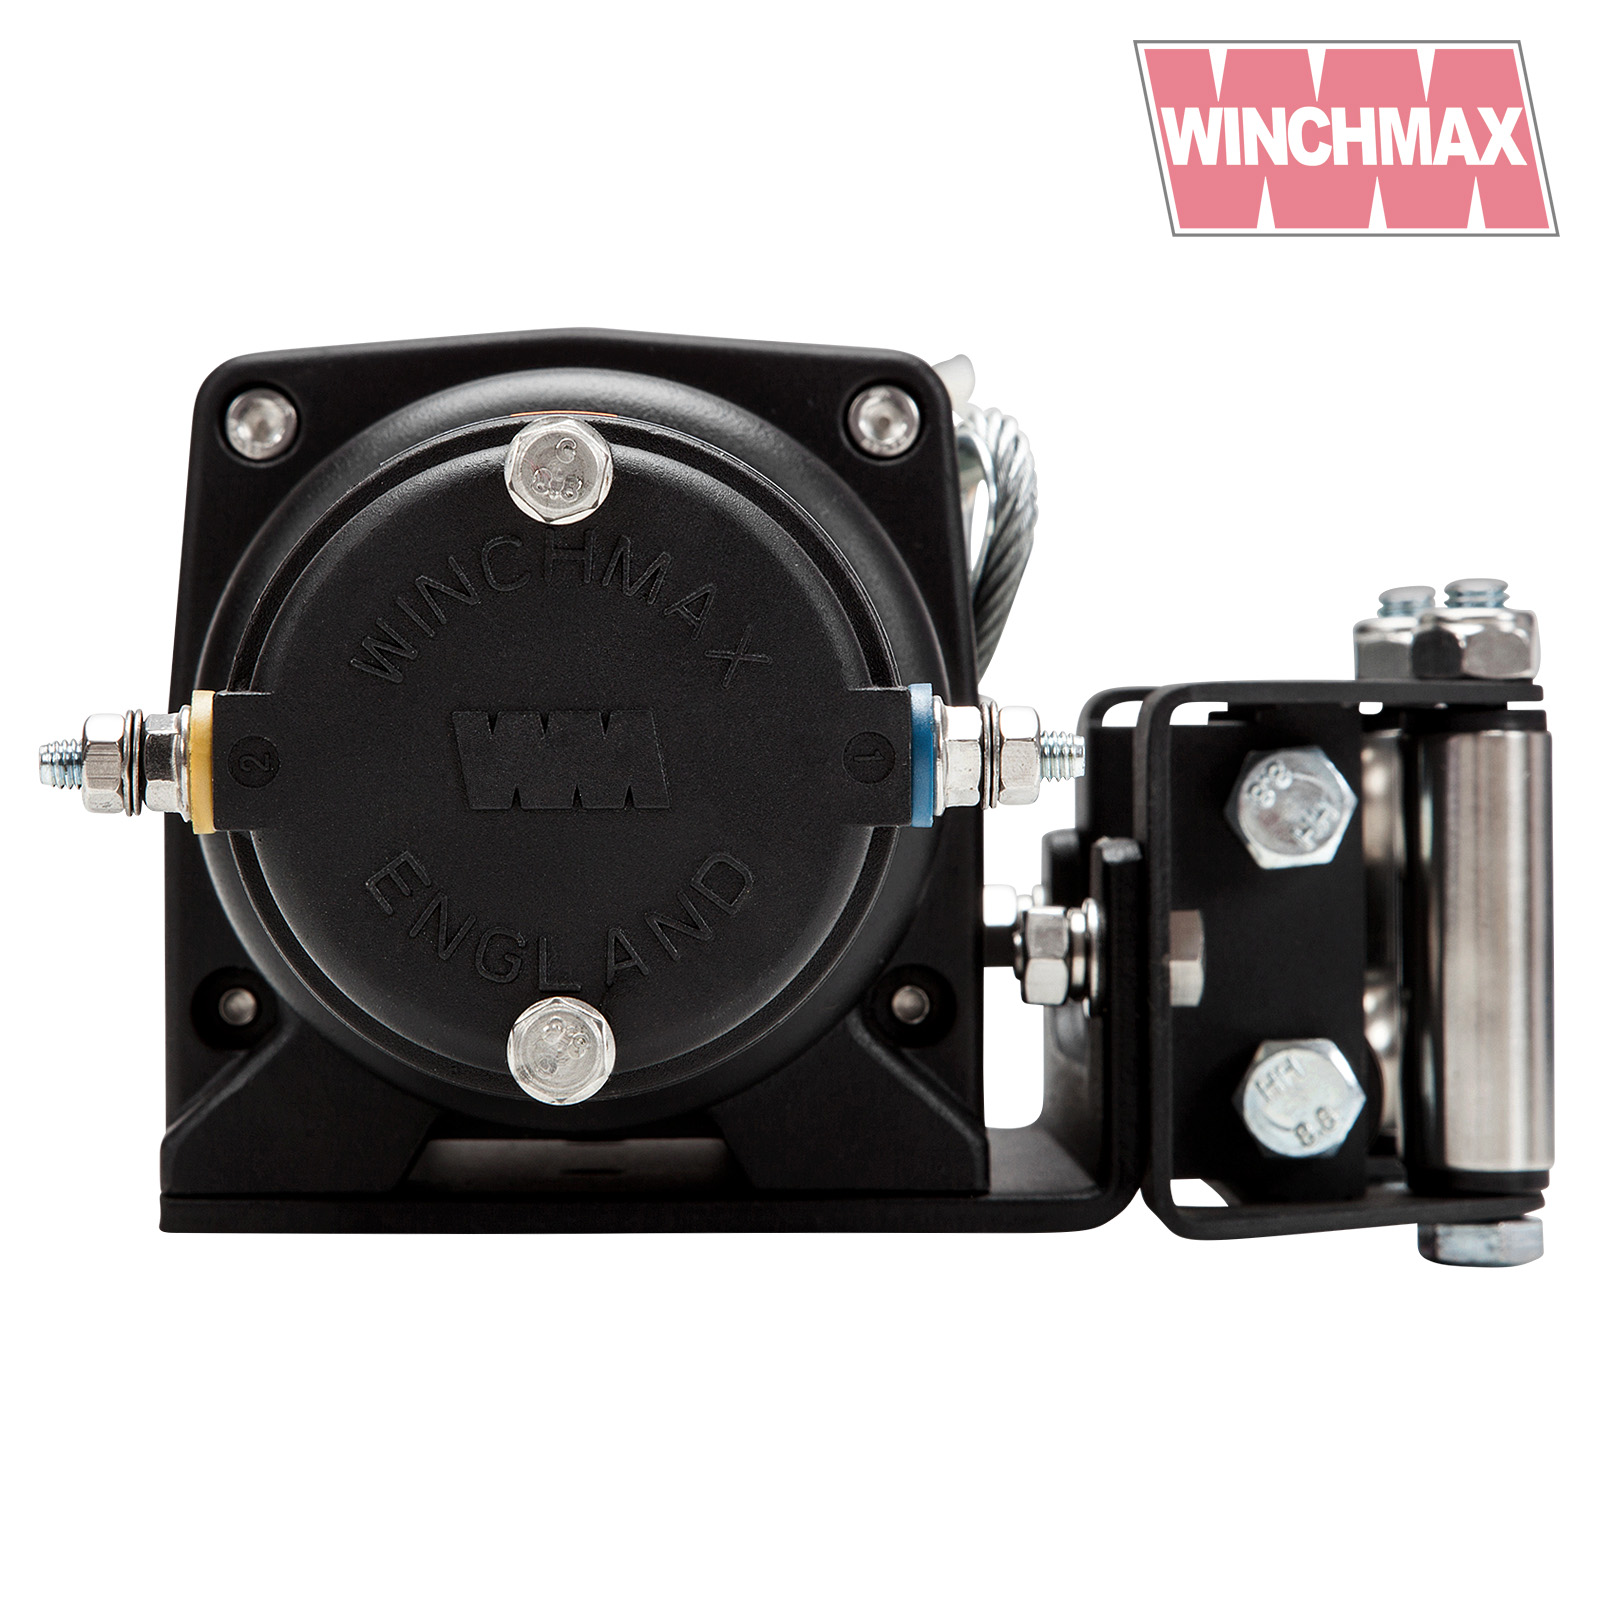 Winchmax 3,000lb ATV Winch